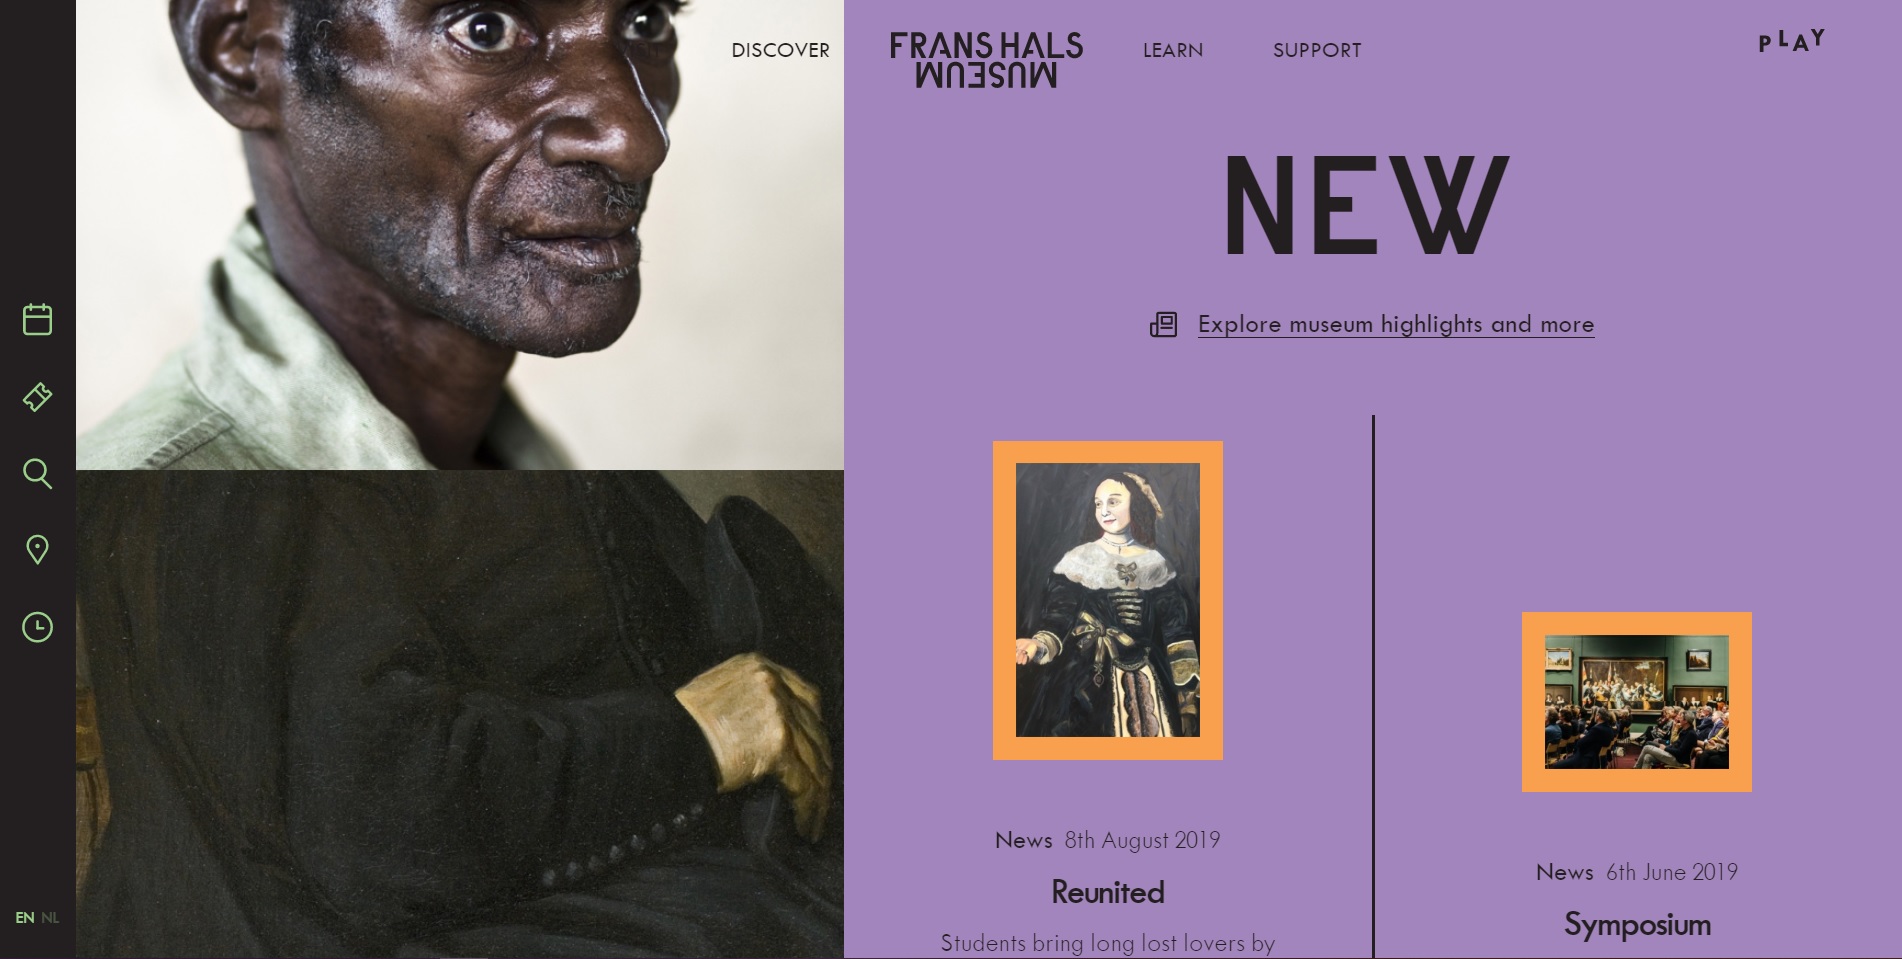 Website van het Frans Hals museum